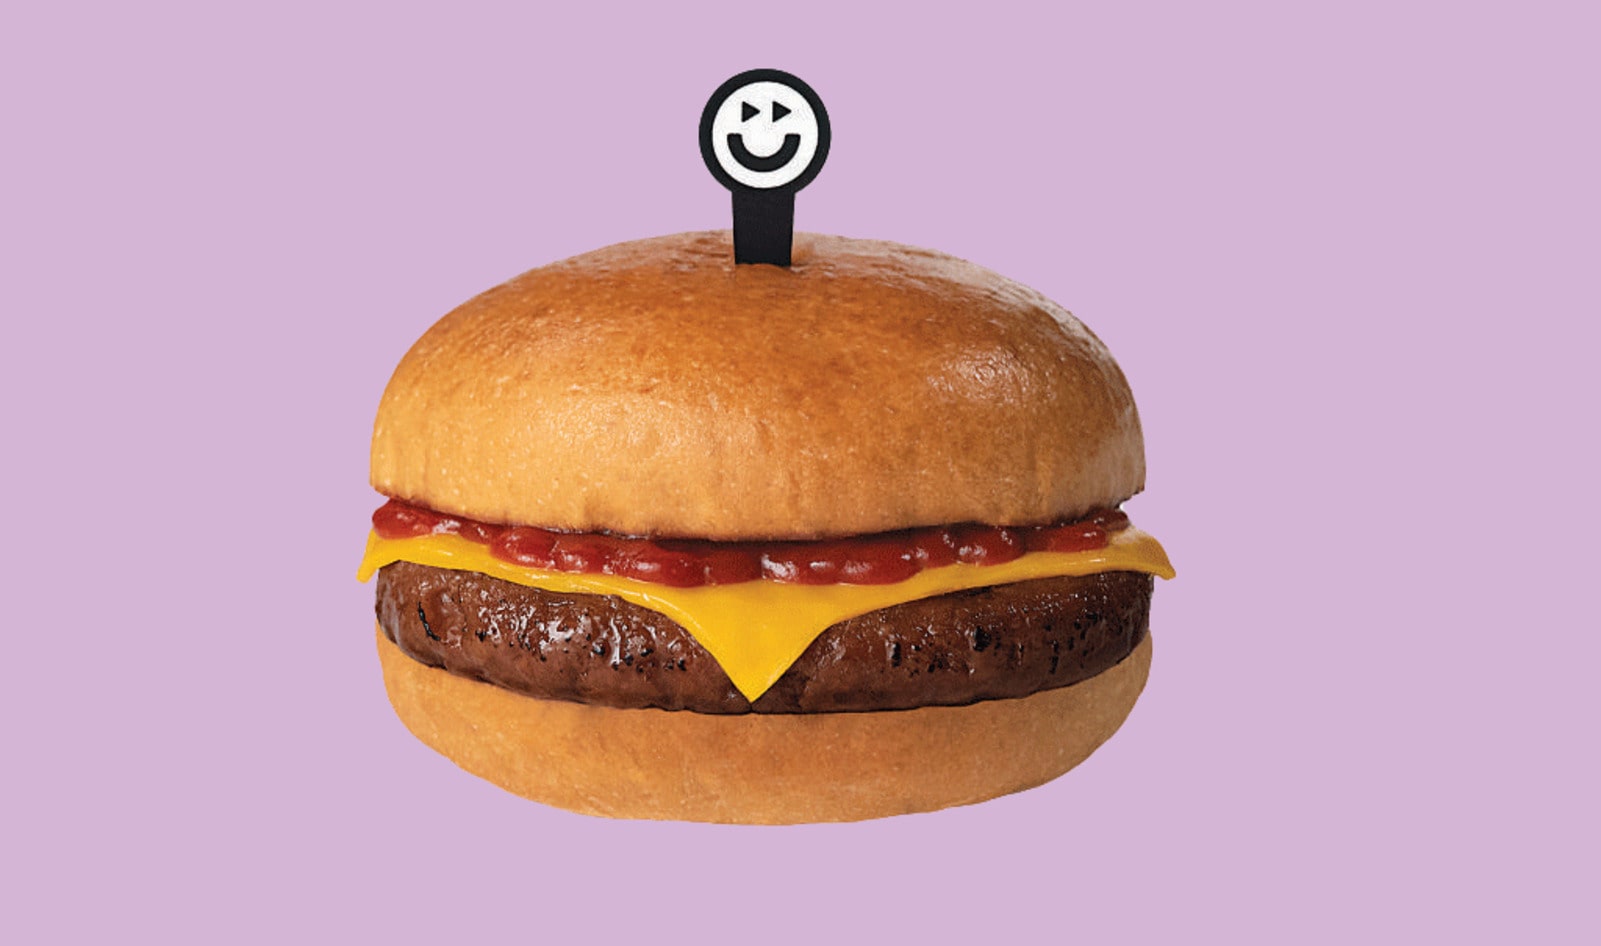 Brazilian Startup Launches High-Tech Vegan “Futuro” Burger